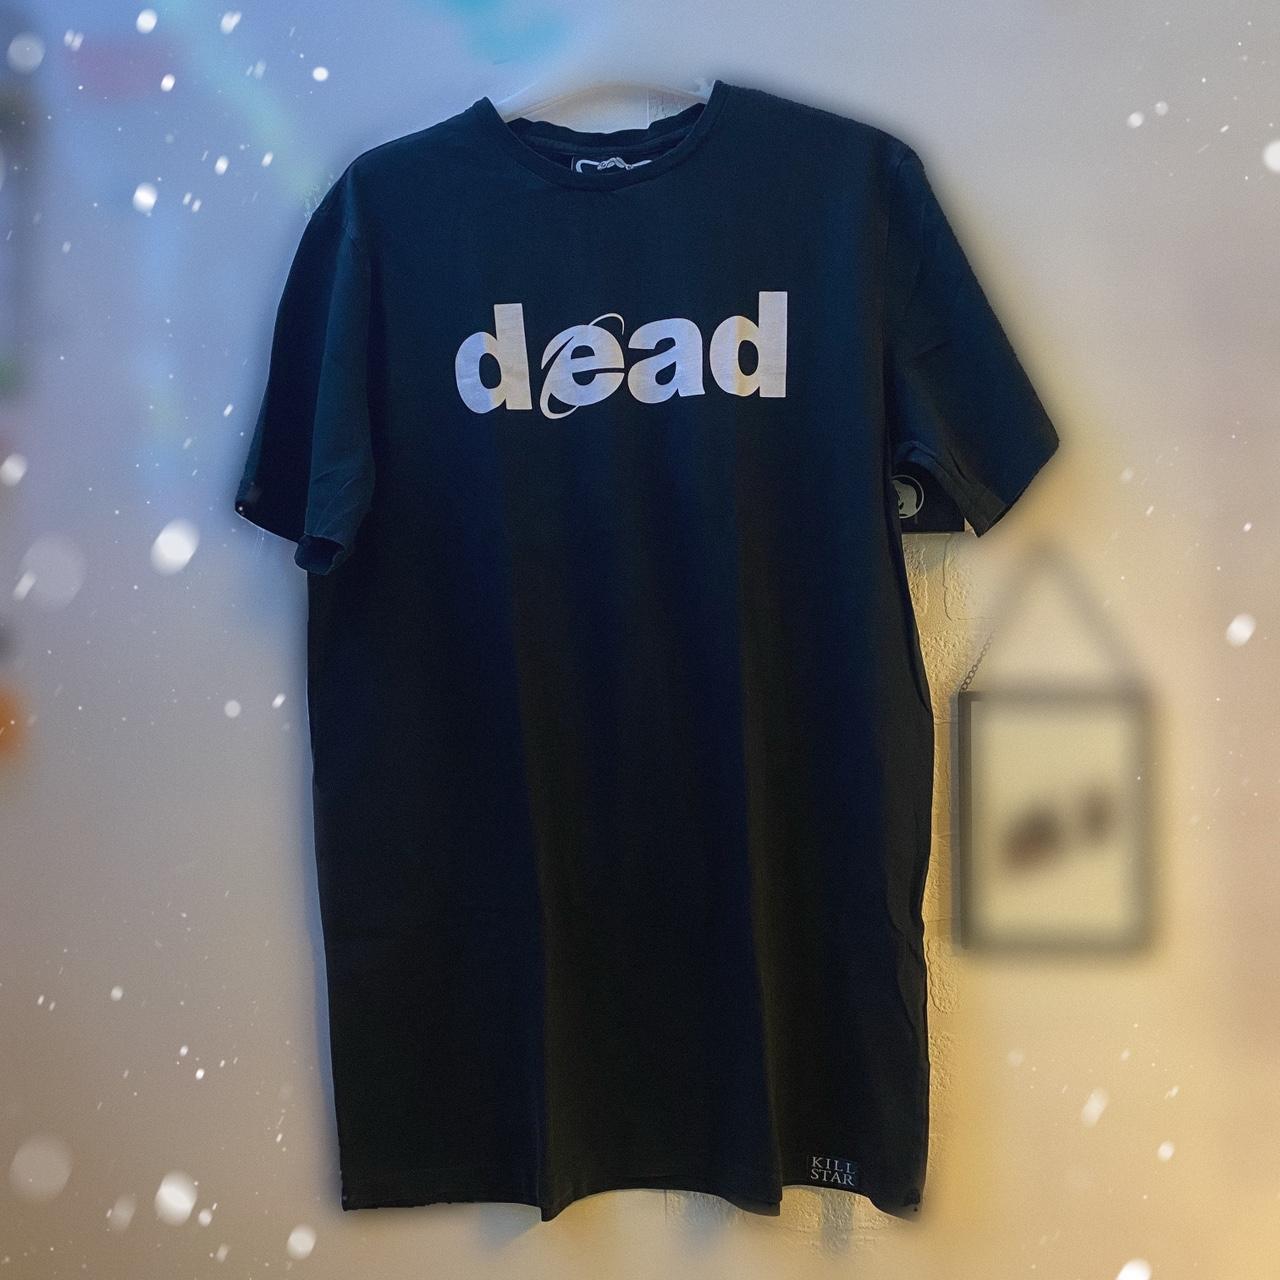 🌙 Killstar - Dead internet explorer long t-shirt... - Depop